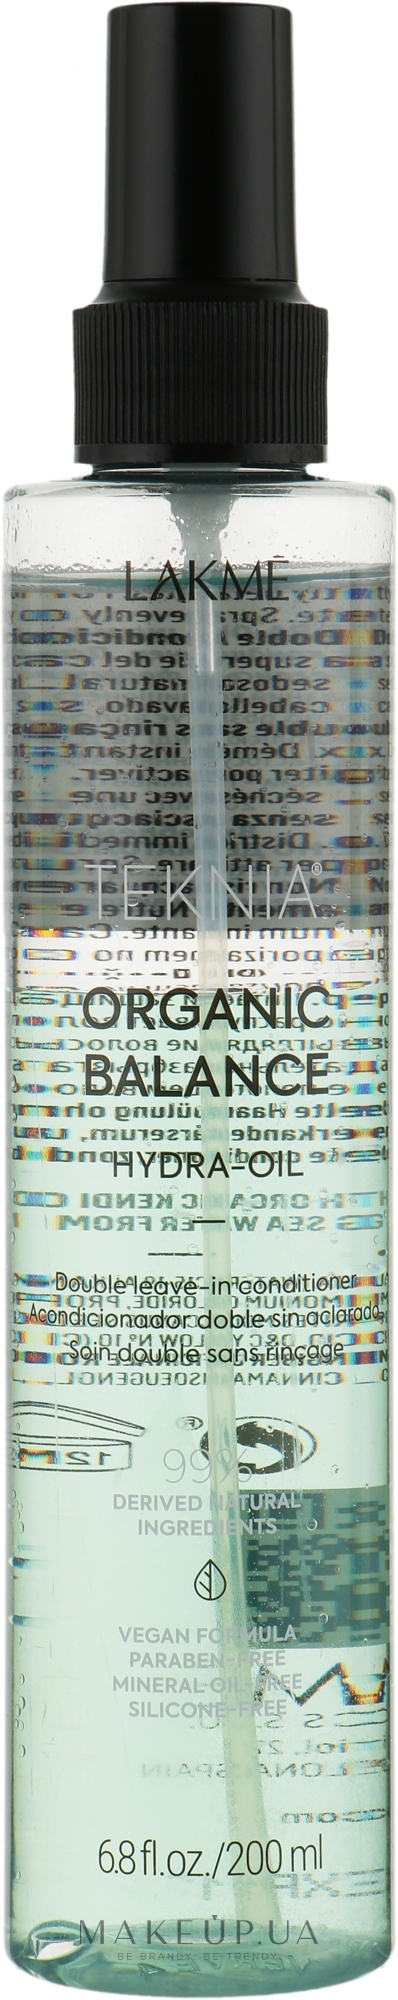 Гидро-масло для ухода за волосами - Lakme Teknia Organic Balance Hydra-Oil — фото 200ml